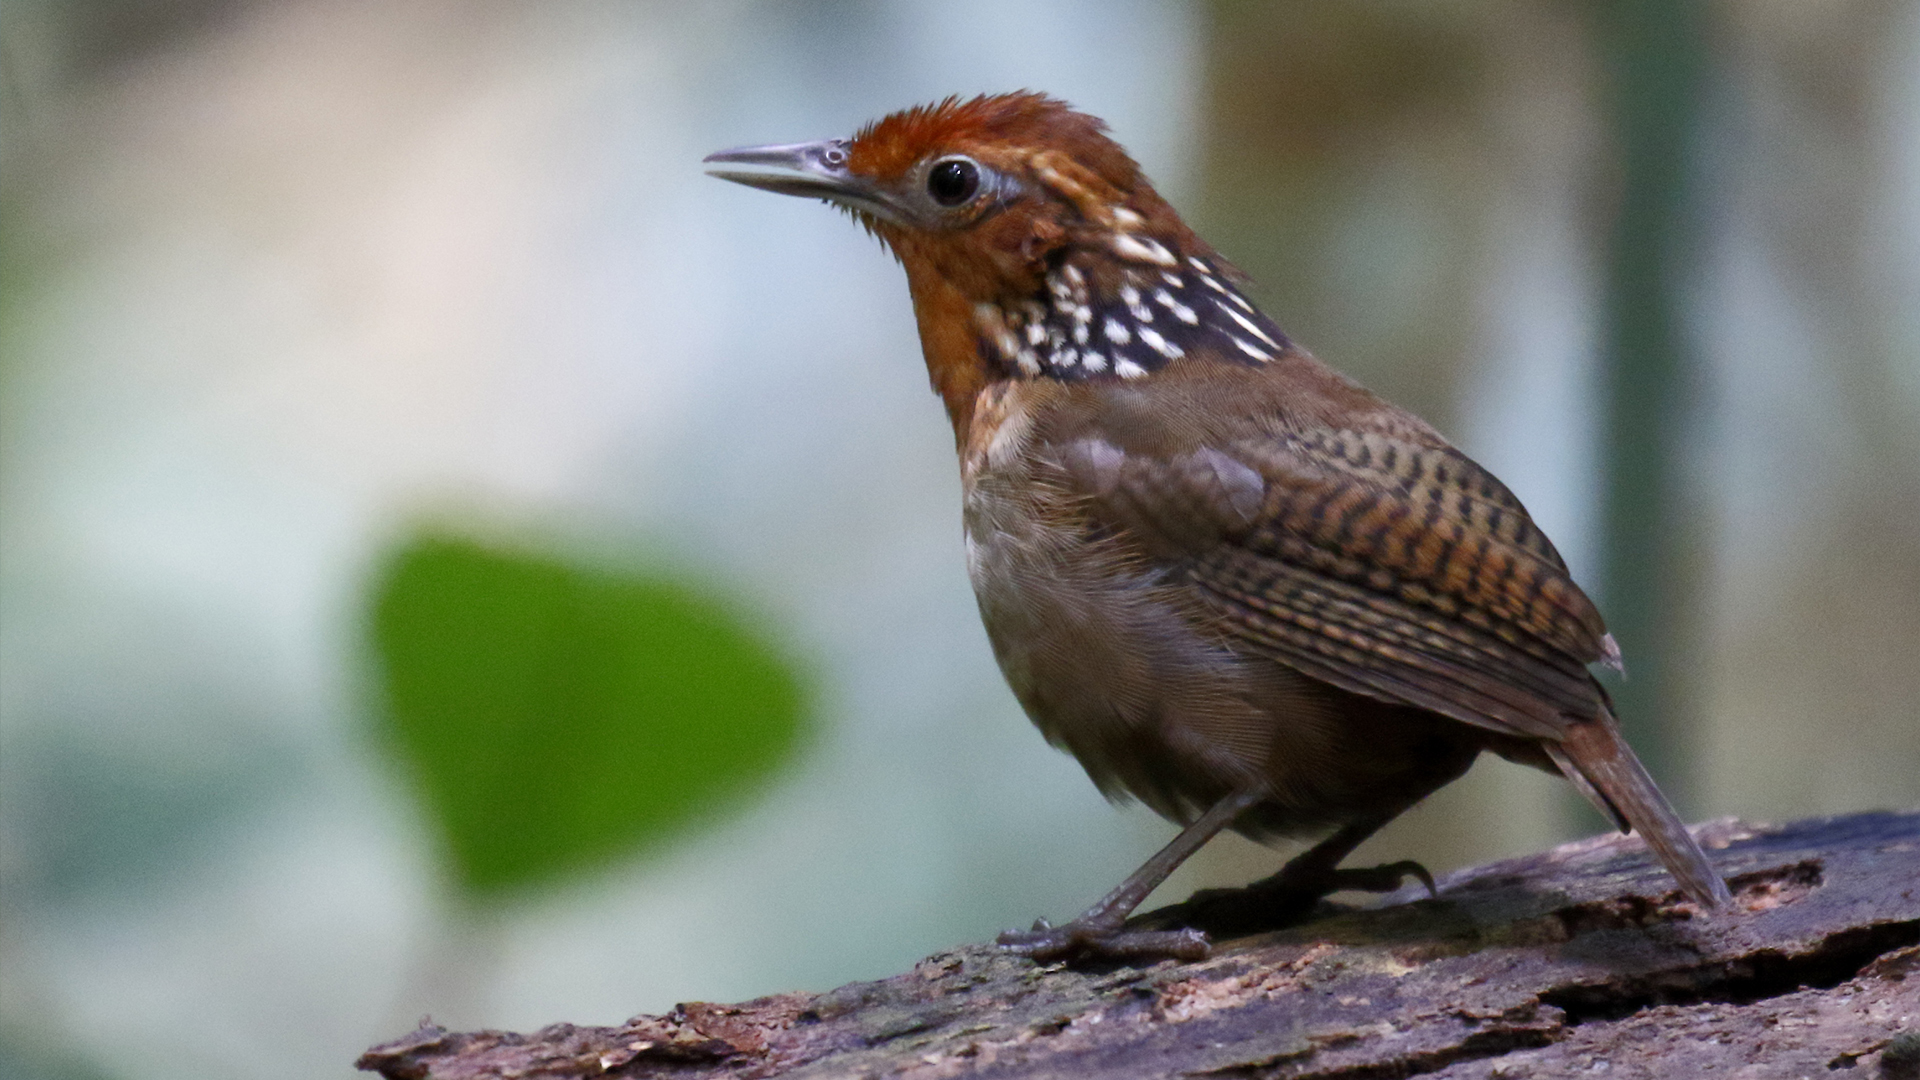 Mudanças climáticas estão causando perda de peso nas aves e outros animais da Amazônia